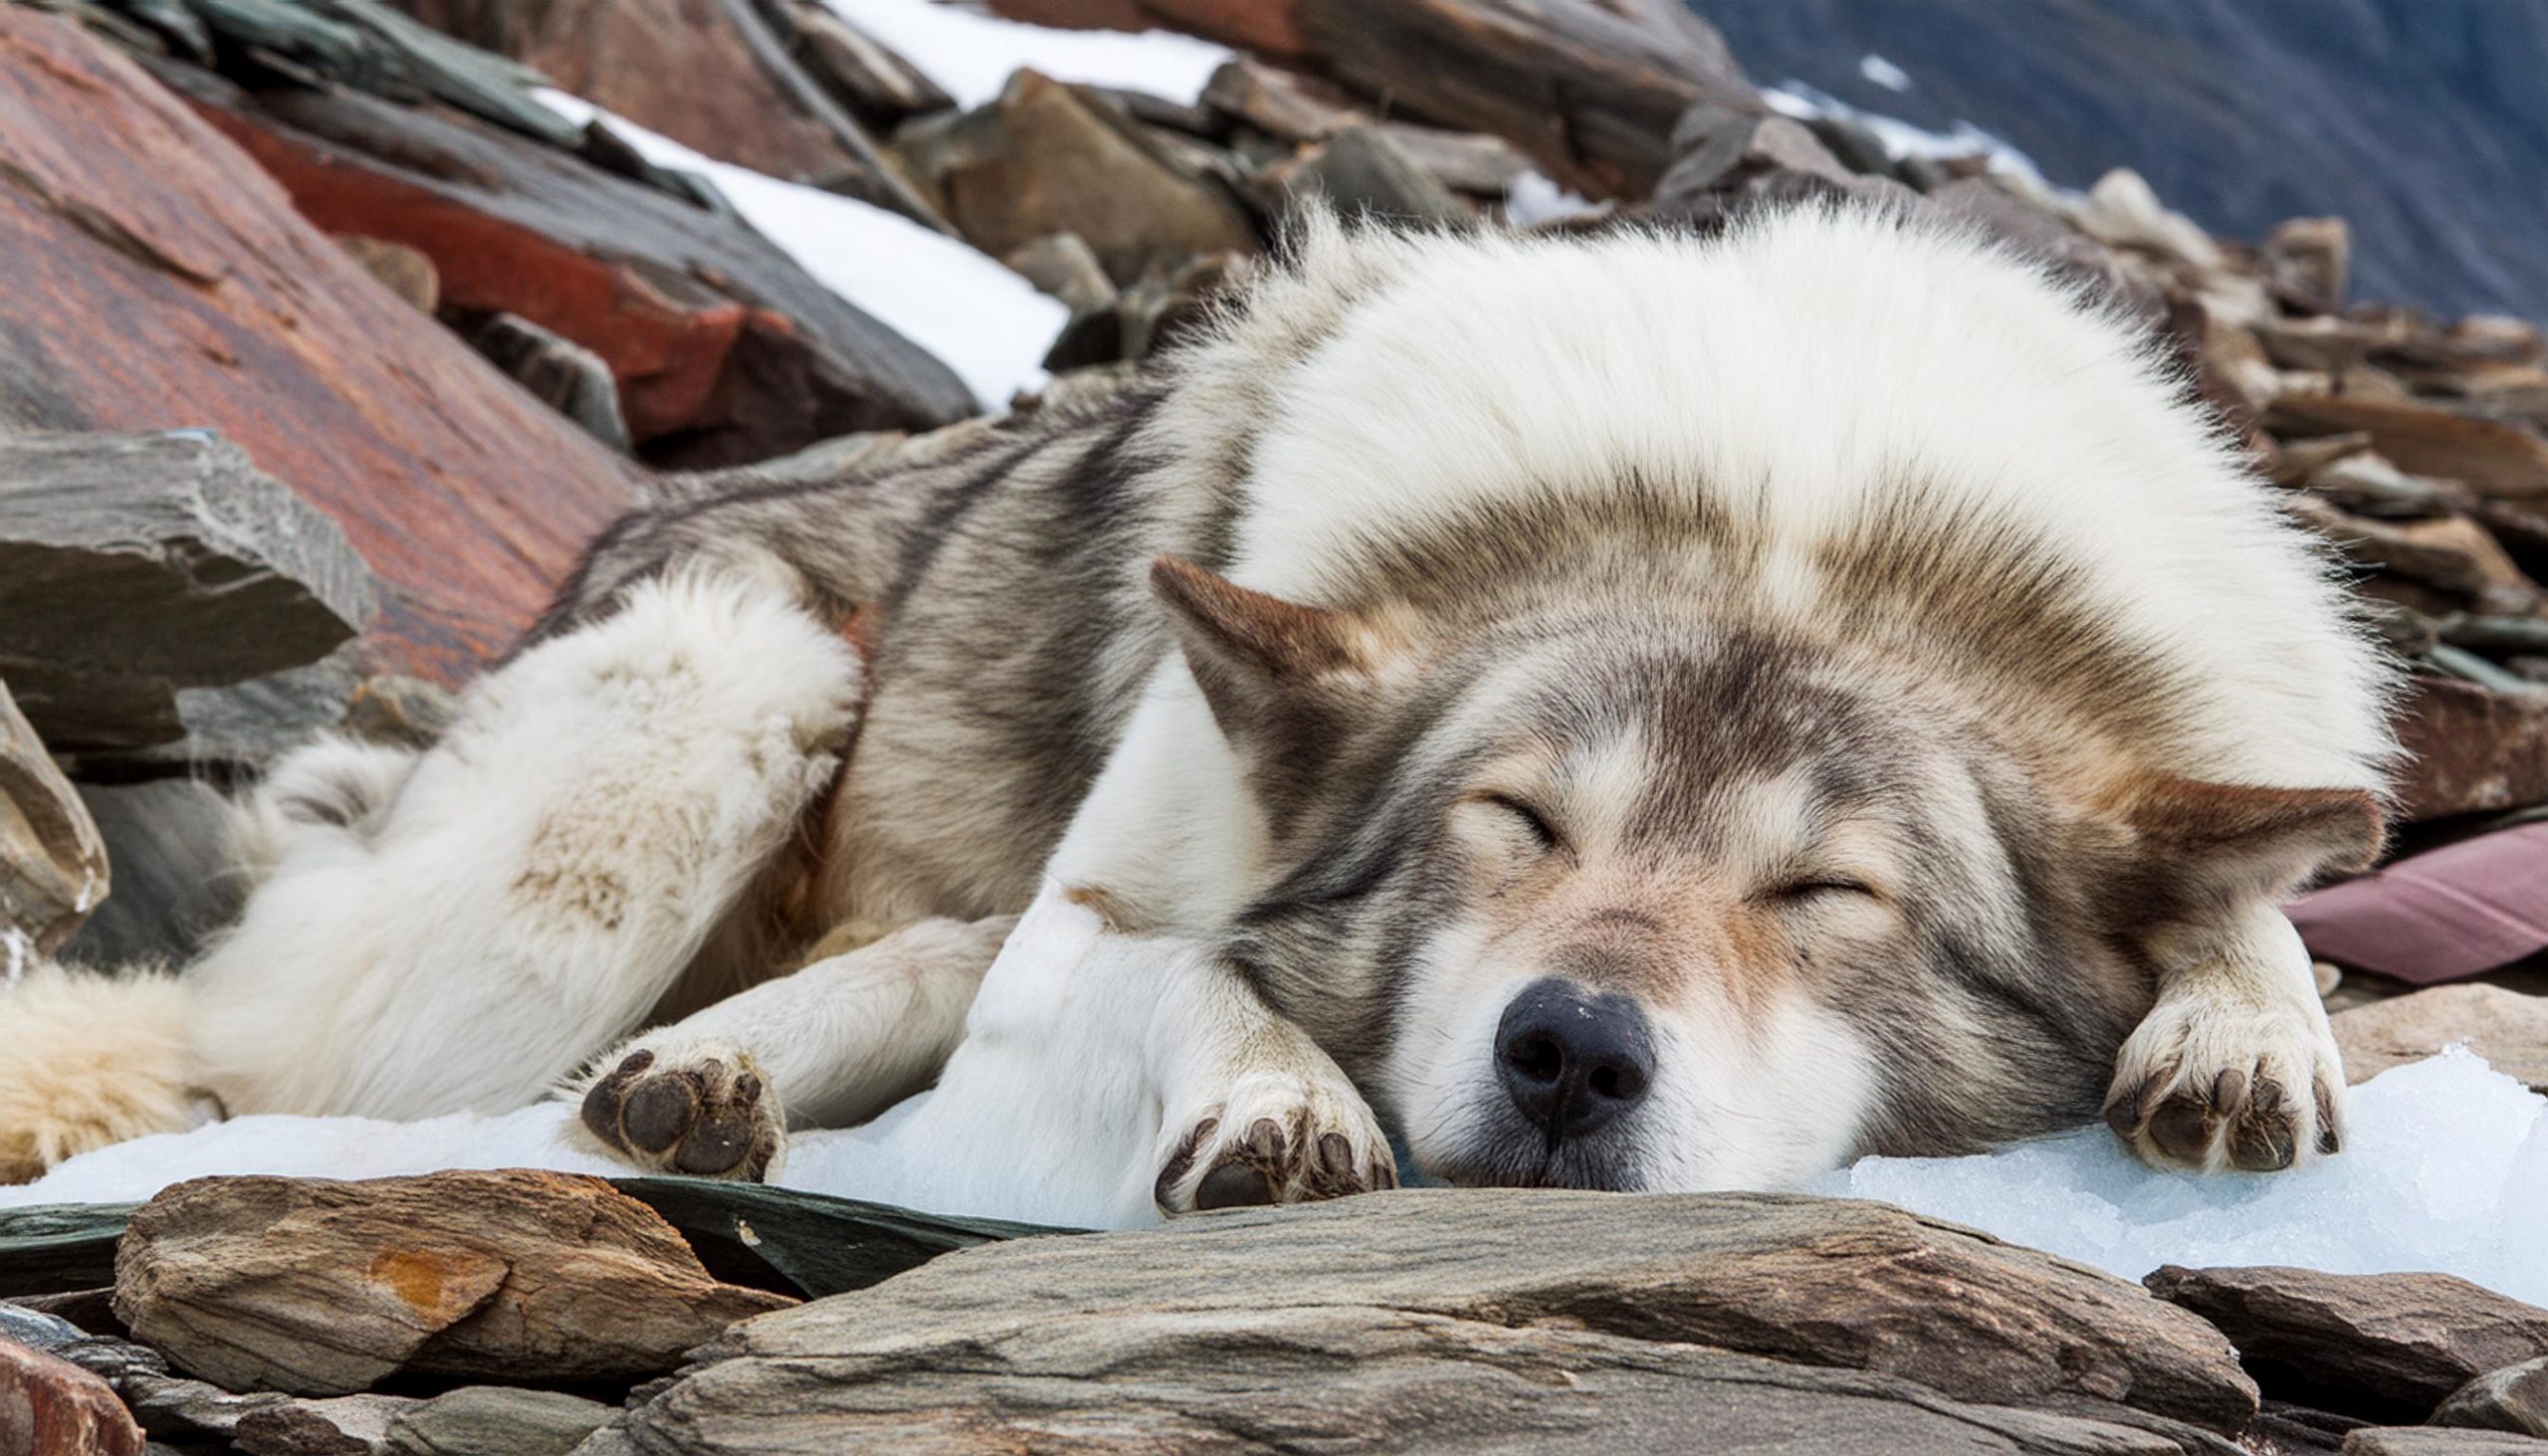 De Groenlandse hond is een hondenras, behorend tot de Scandinavische type keeshonden van het oertype. Het land van herkomst is Groenland. Hij is een echte werkhond en wordt gebruikt als sledehond.